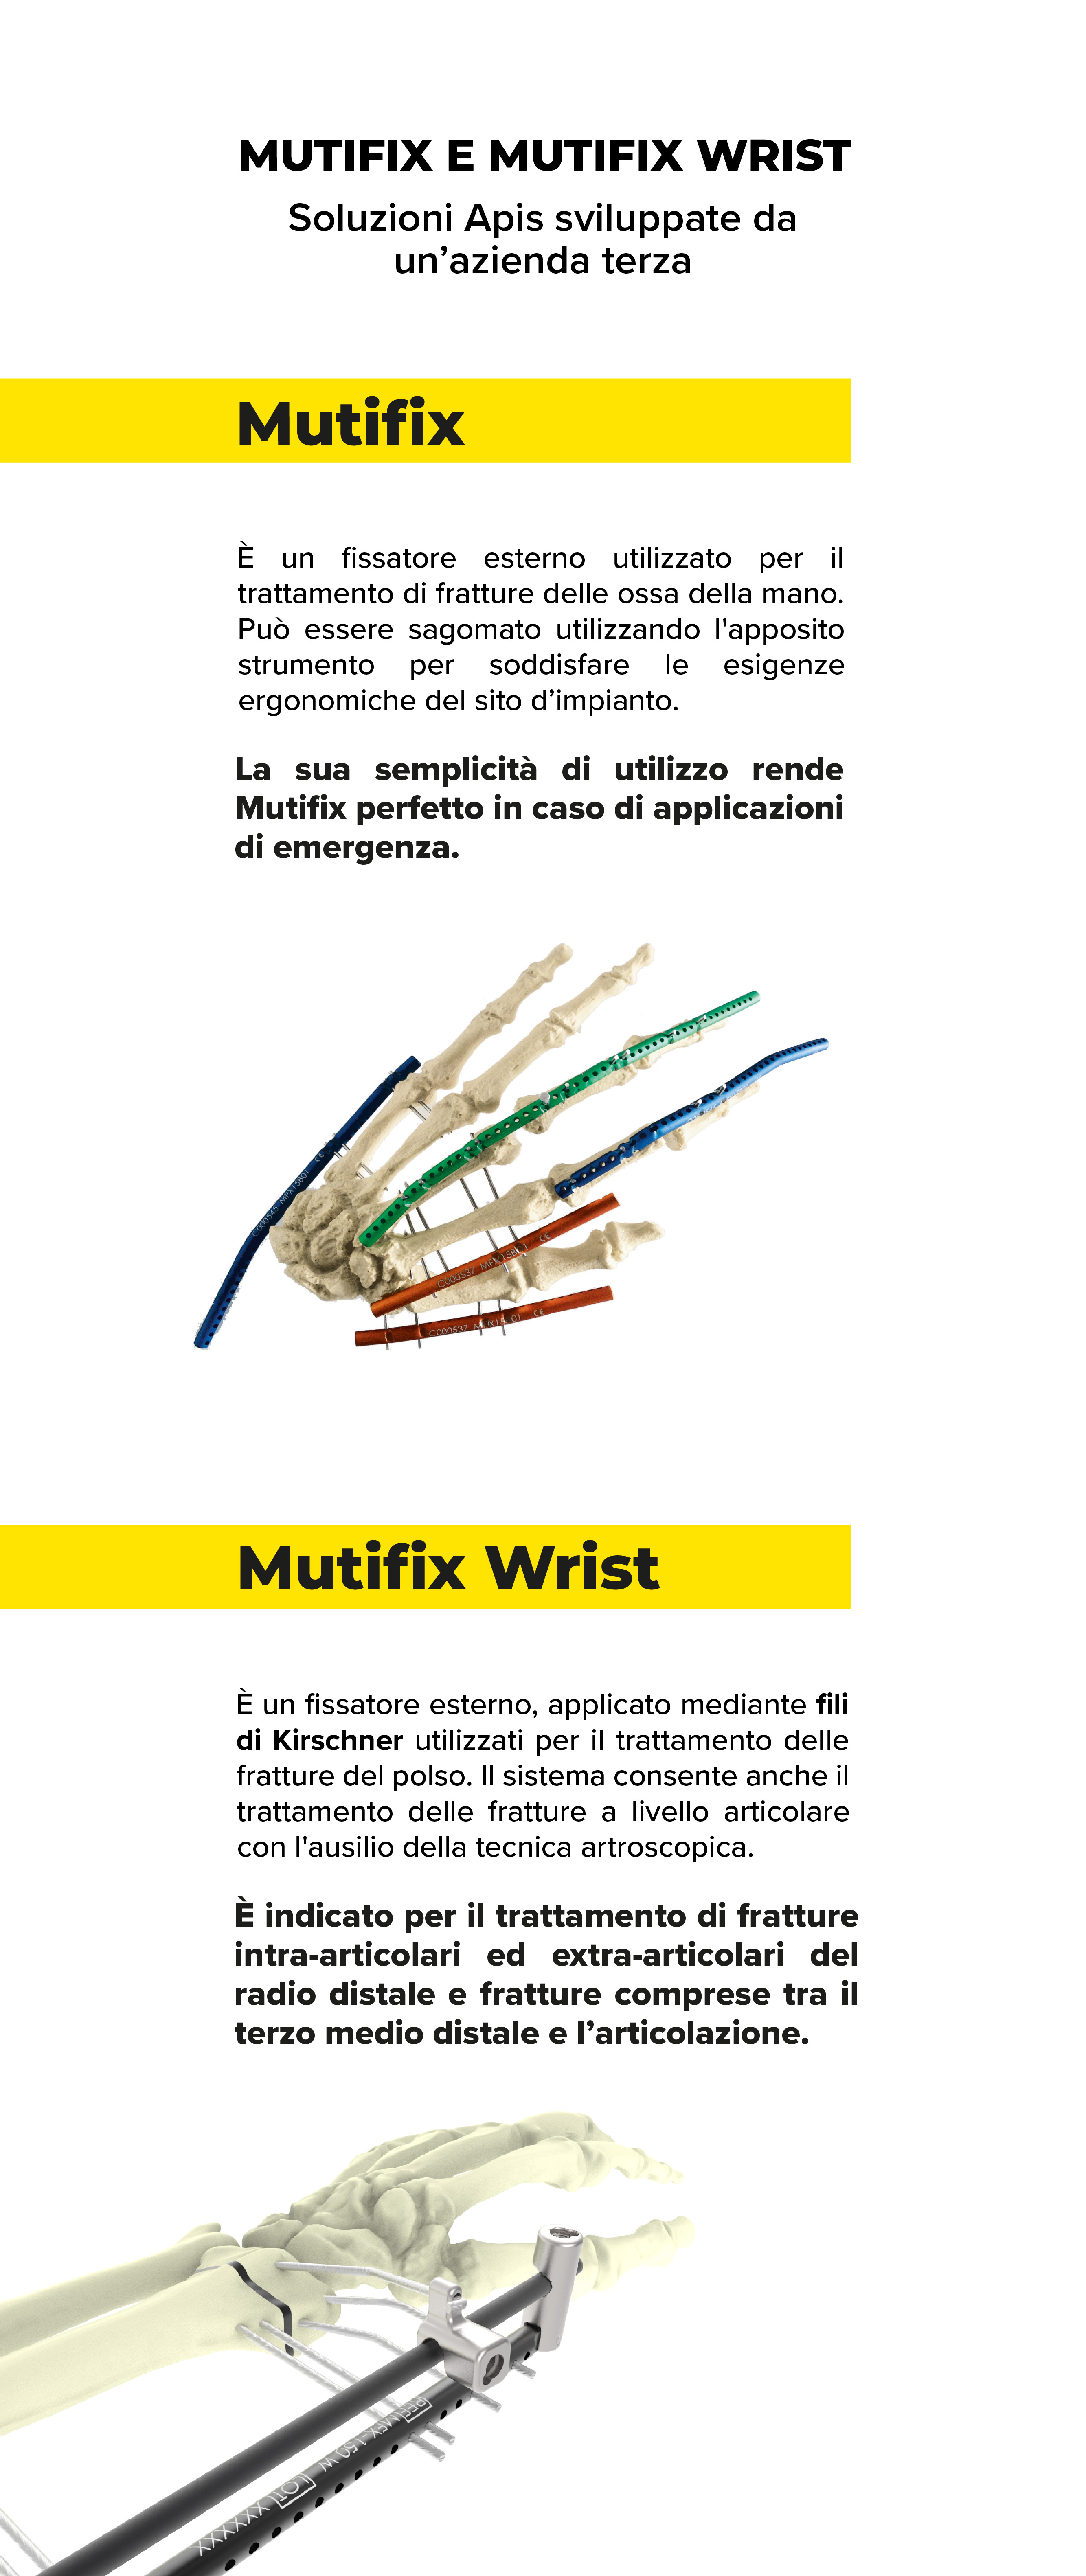 “apis-mutifix-wrist-crowdfunding-wearestarting"